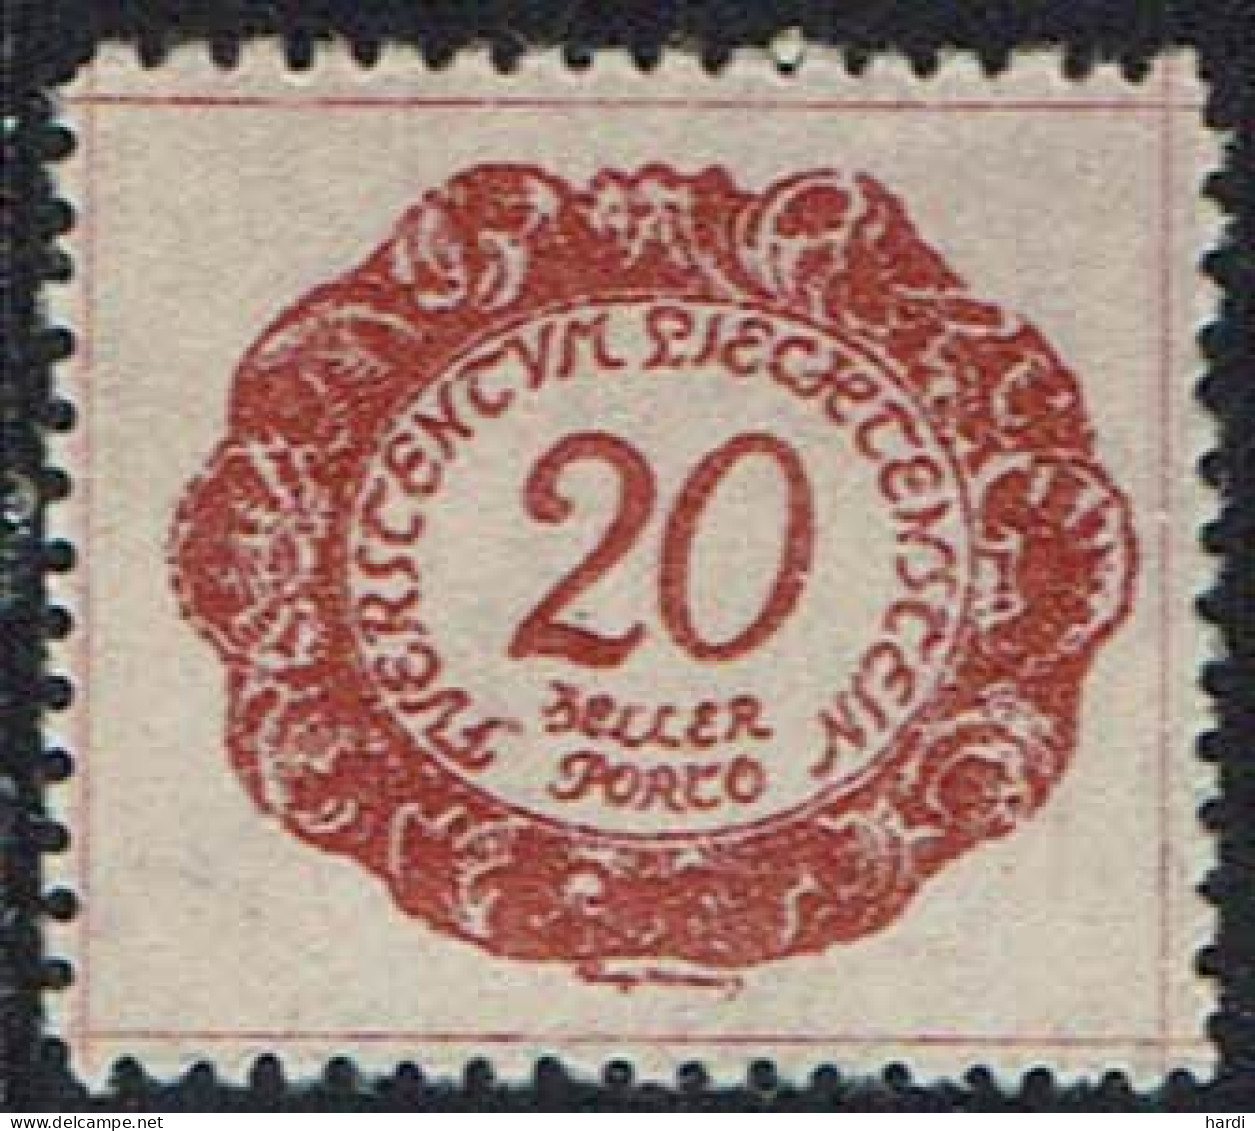 Liechtenstein 1920, MiNr.: 4, Porto Postfrisch - Portomarken